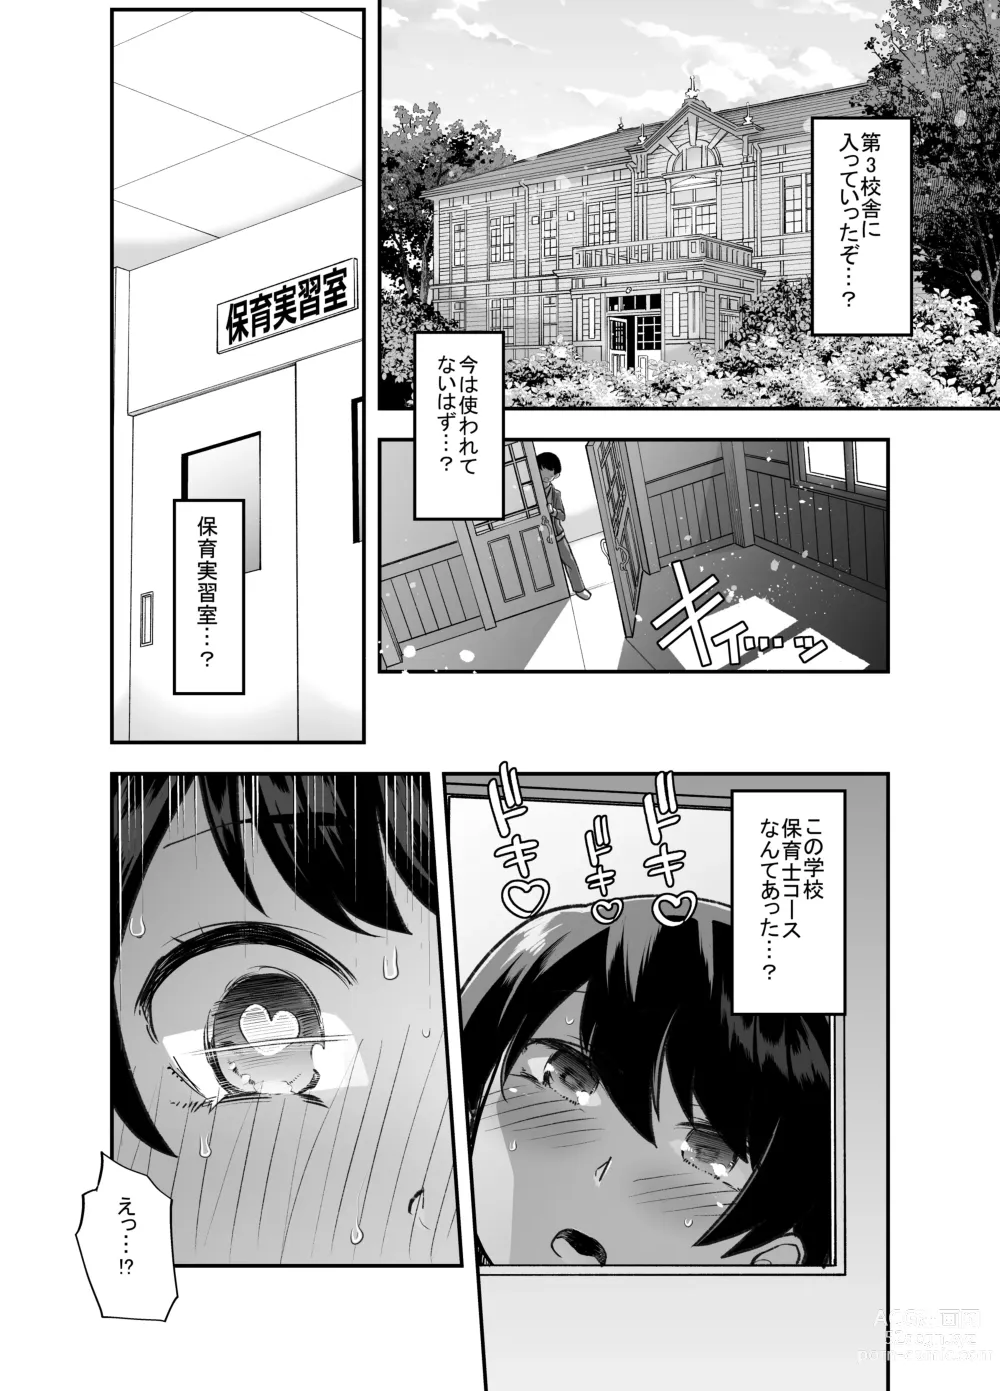 Page 7 of doujinshi Houkago Omutsu Daisuki Club e Youkoso